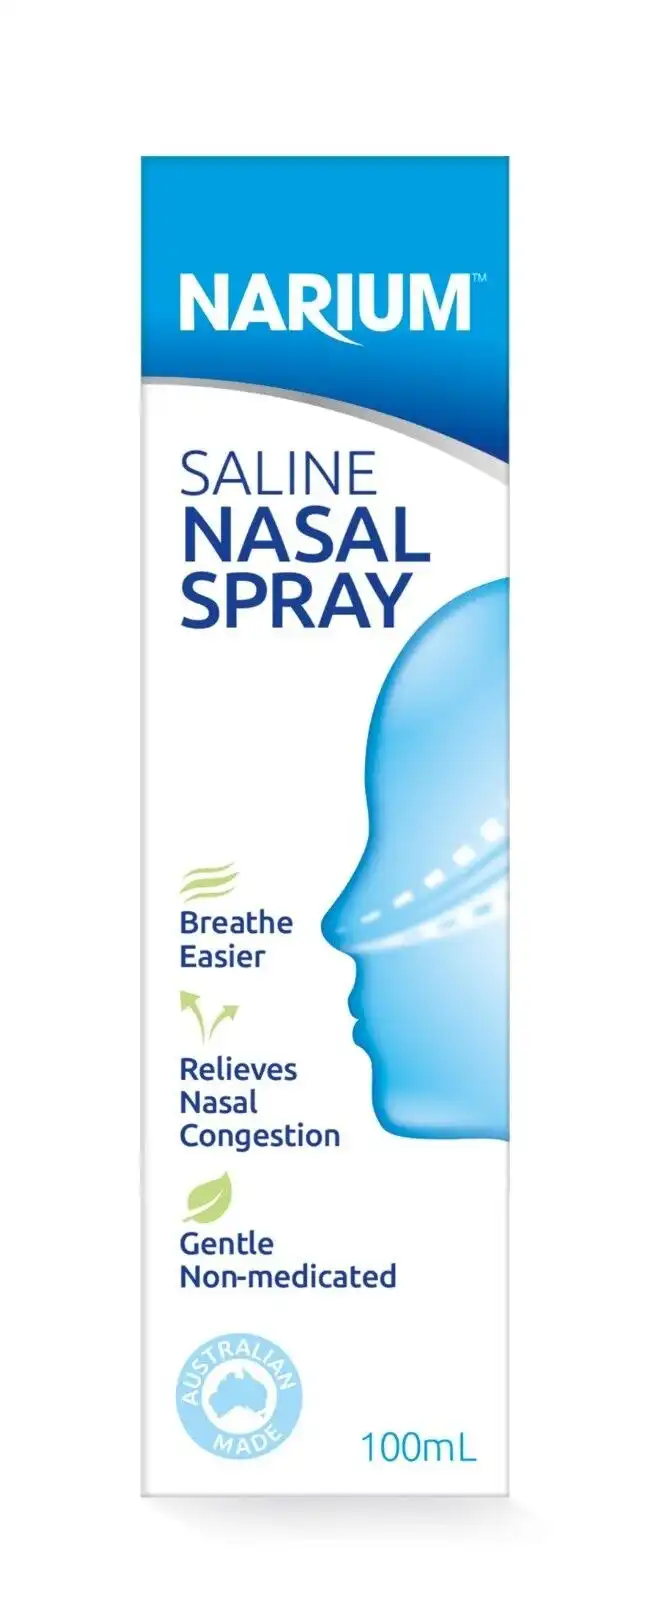 NARIUM Nasal Spray/mist 100ml Saline Spray - Mist